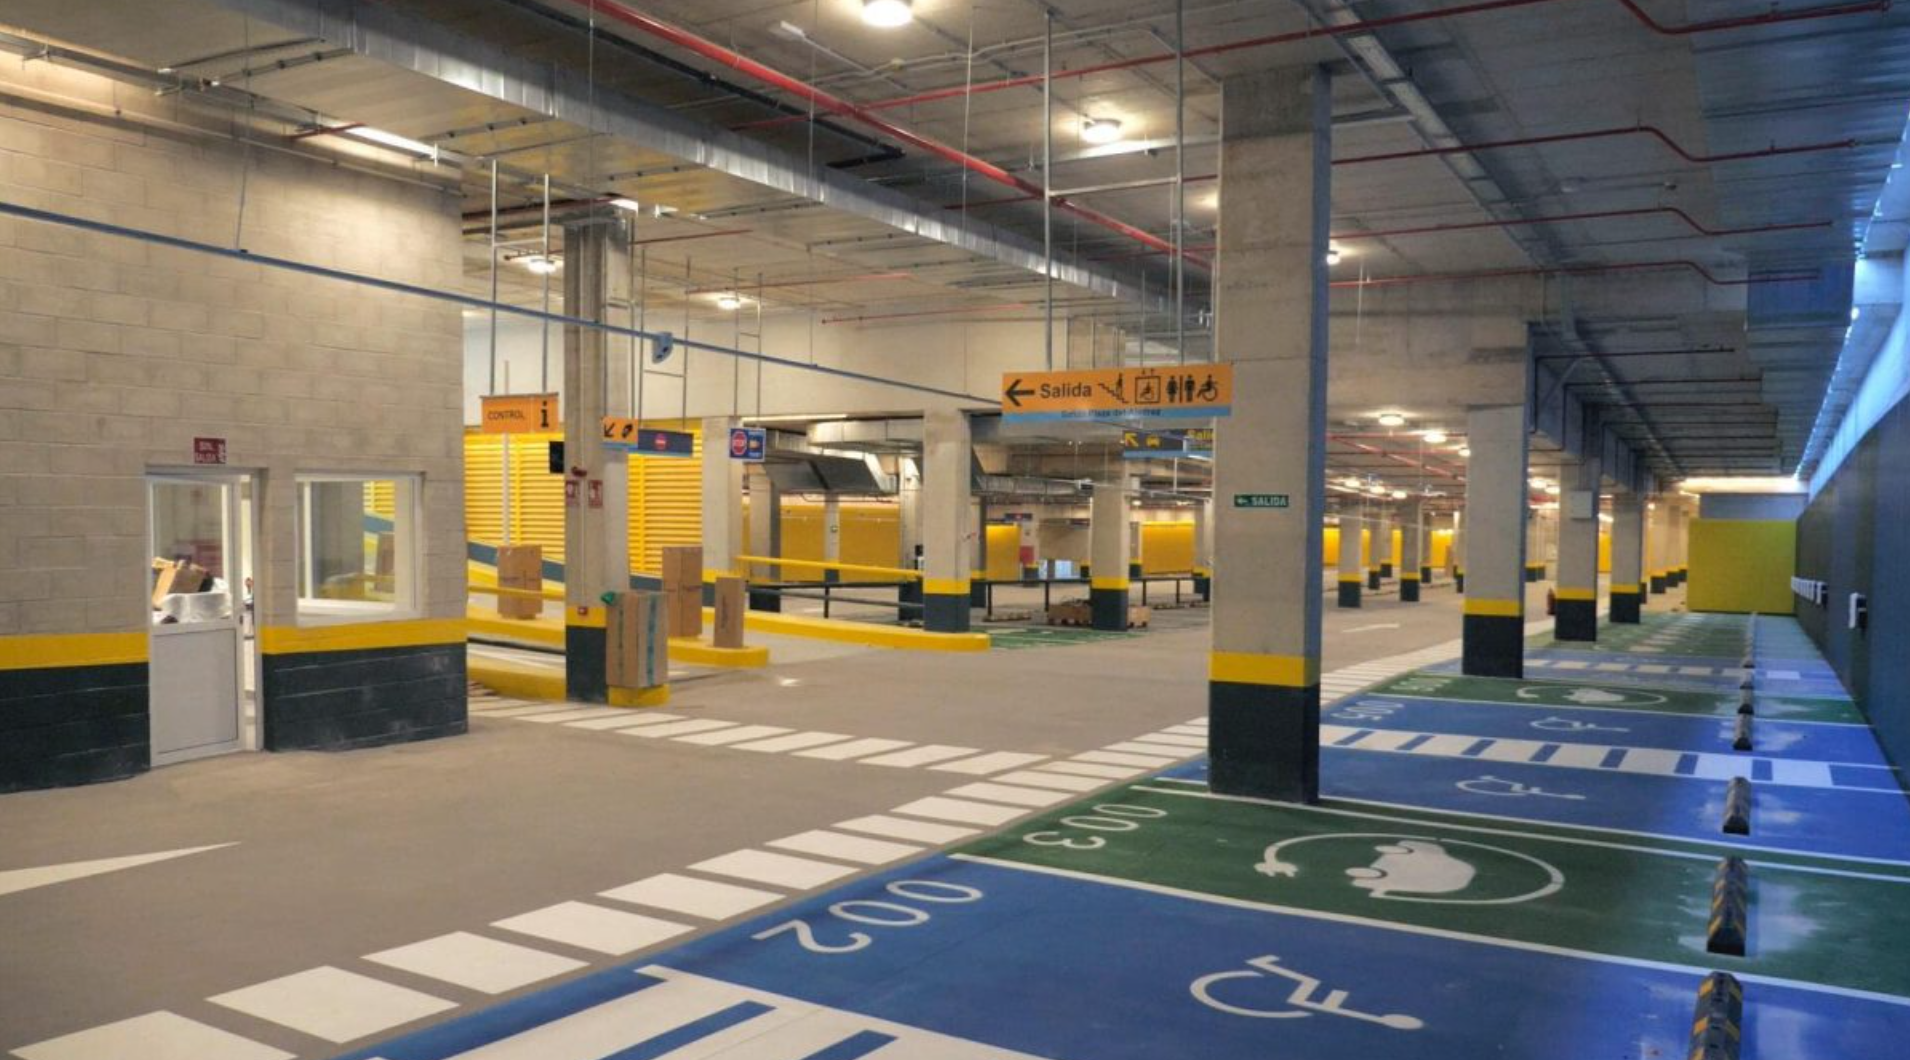 Inaugurado el aparcamiento de la Plaza del Ajedrez en Estepona con 500 plazas de aparcamiento